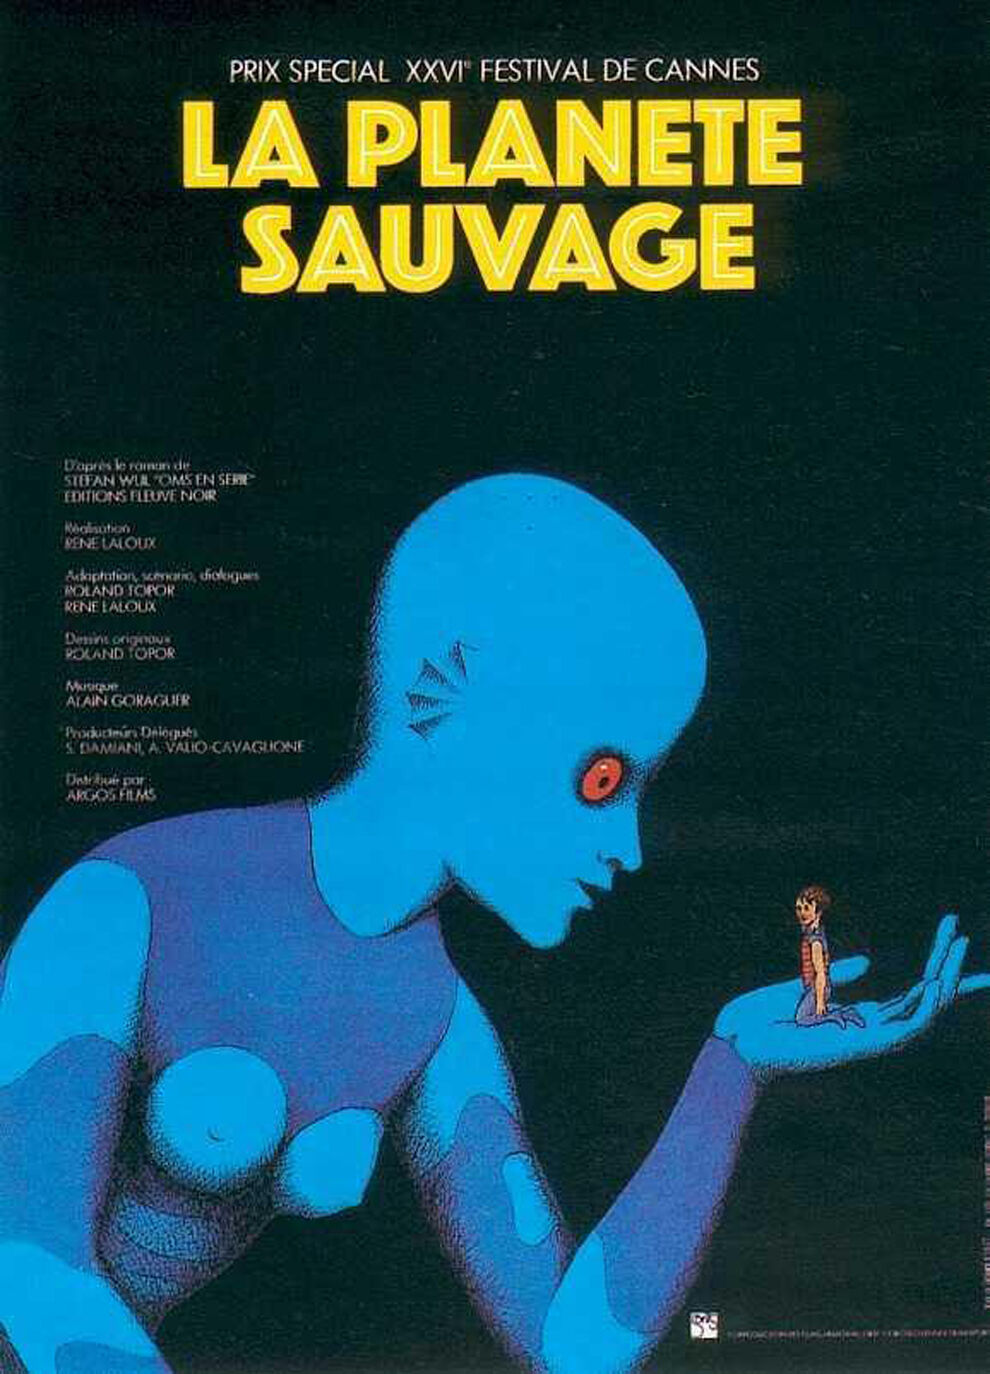 What to Watch? - "La Planète Sauvage" (1973)